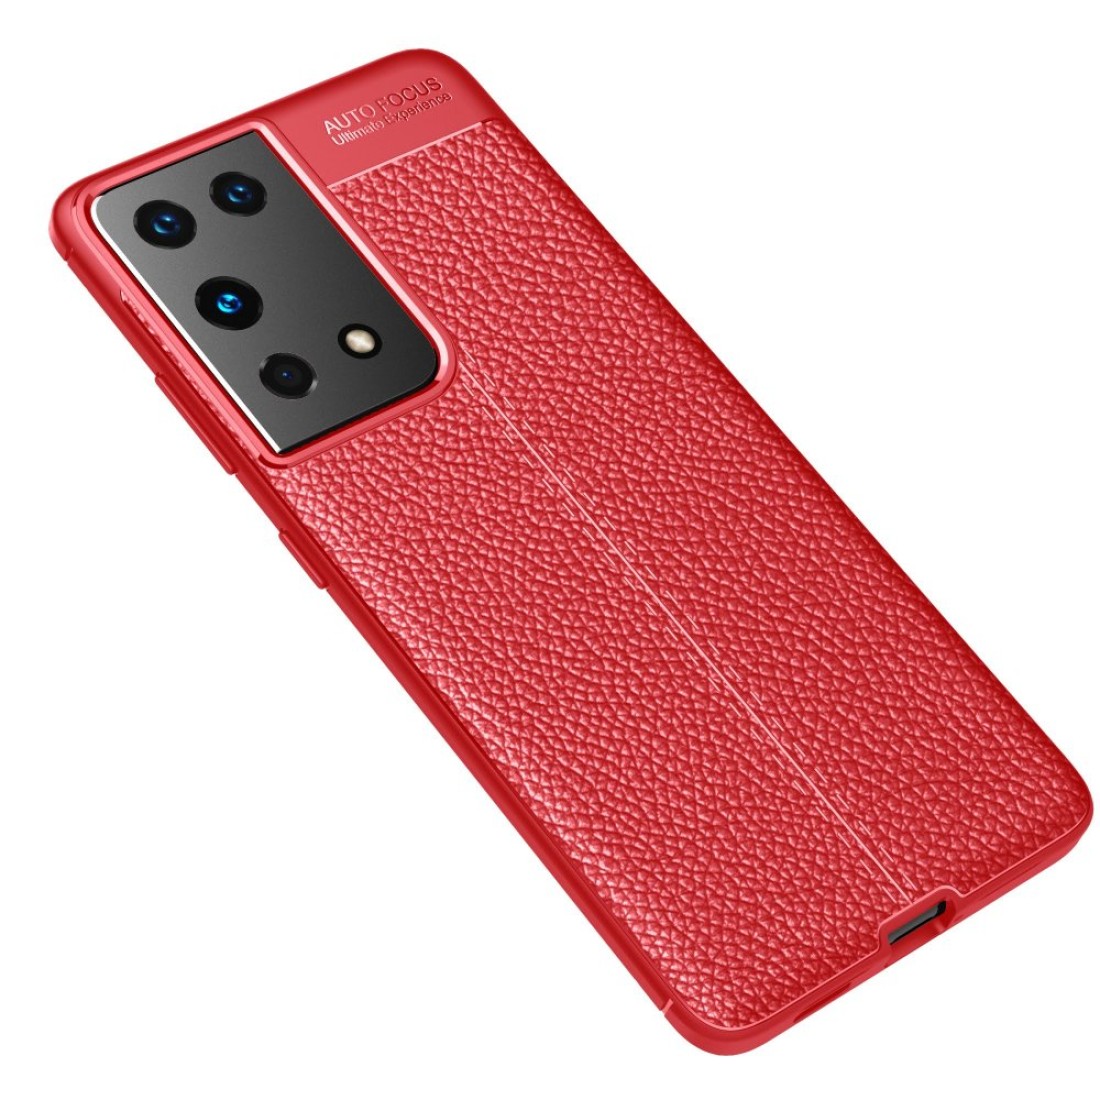 Samsung Galaxy S21 Ultra Kılıf Focus Derili Silikon - Kırmızı